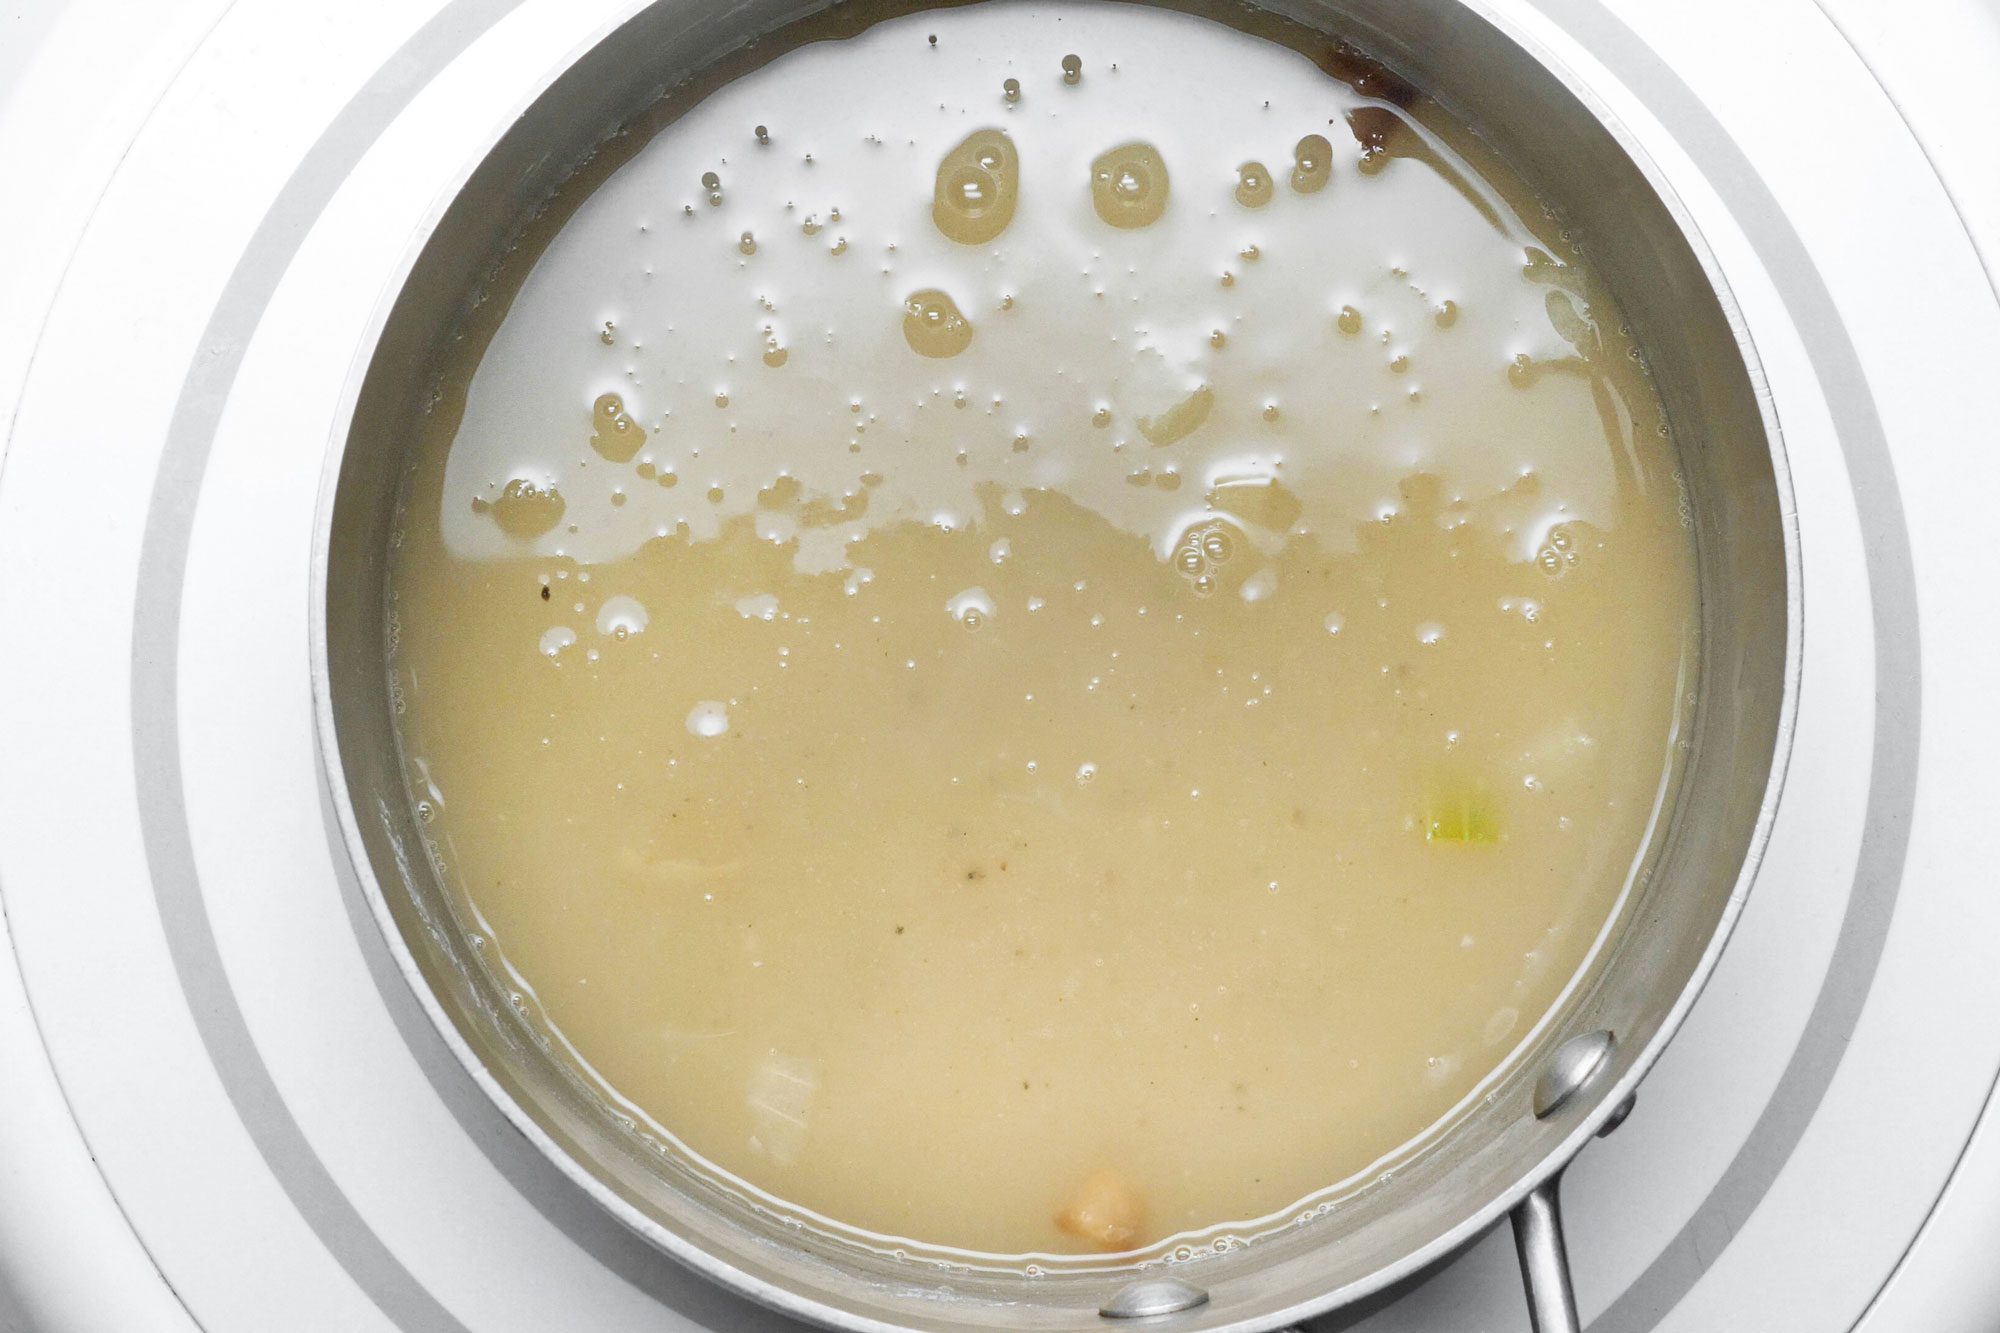 Make the gravy in a small saucepan